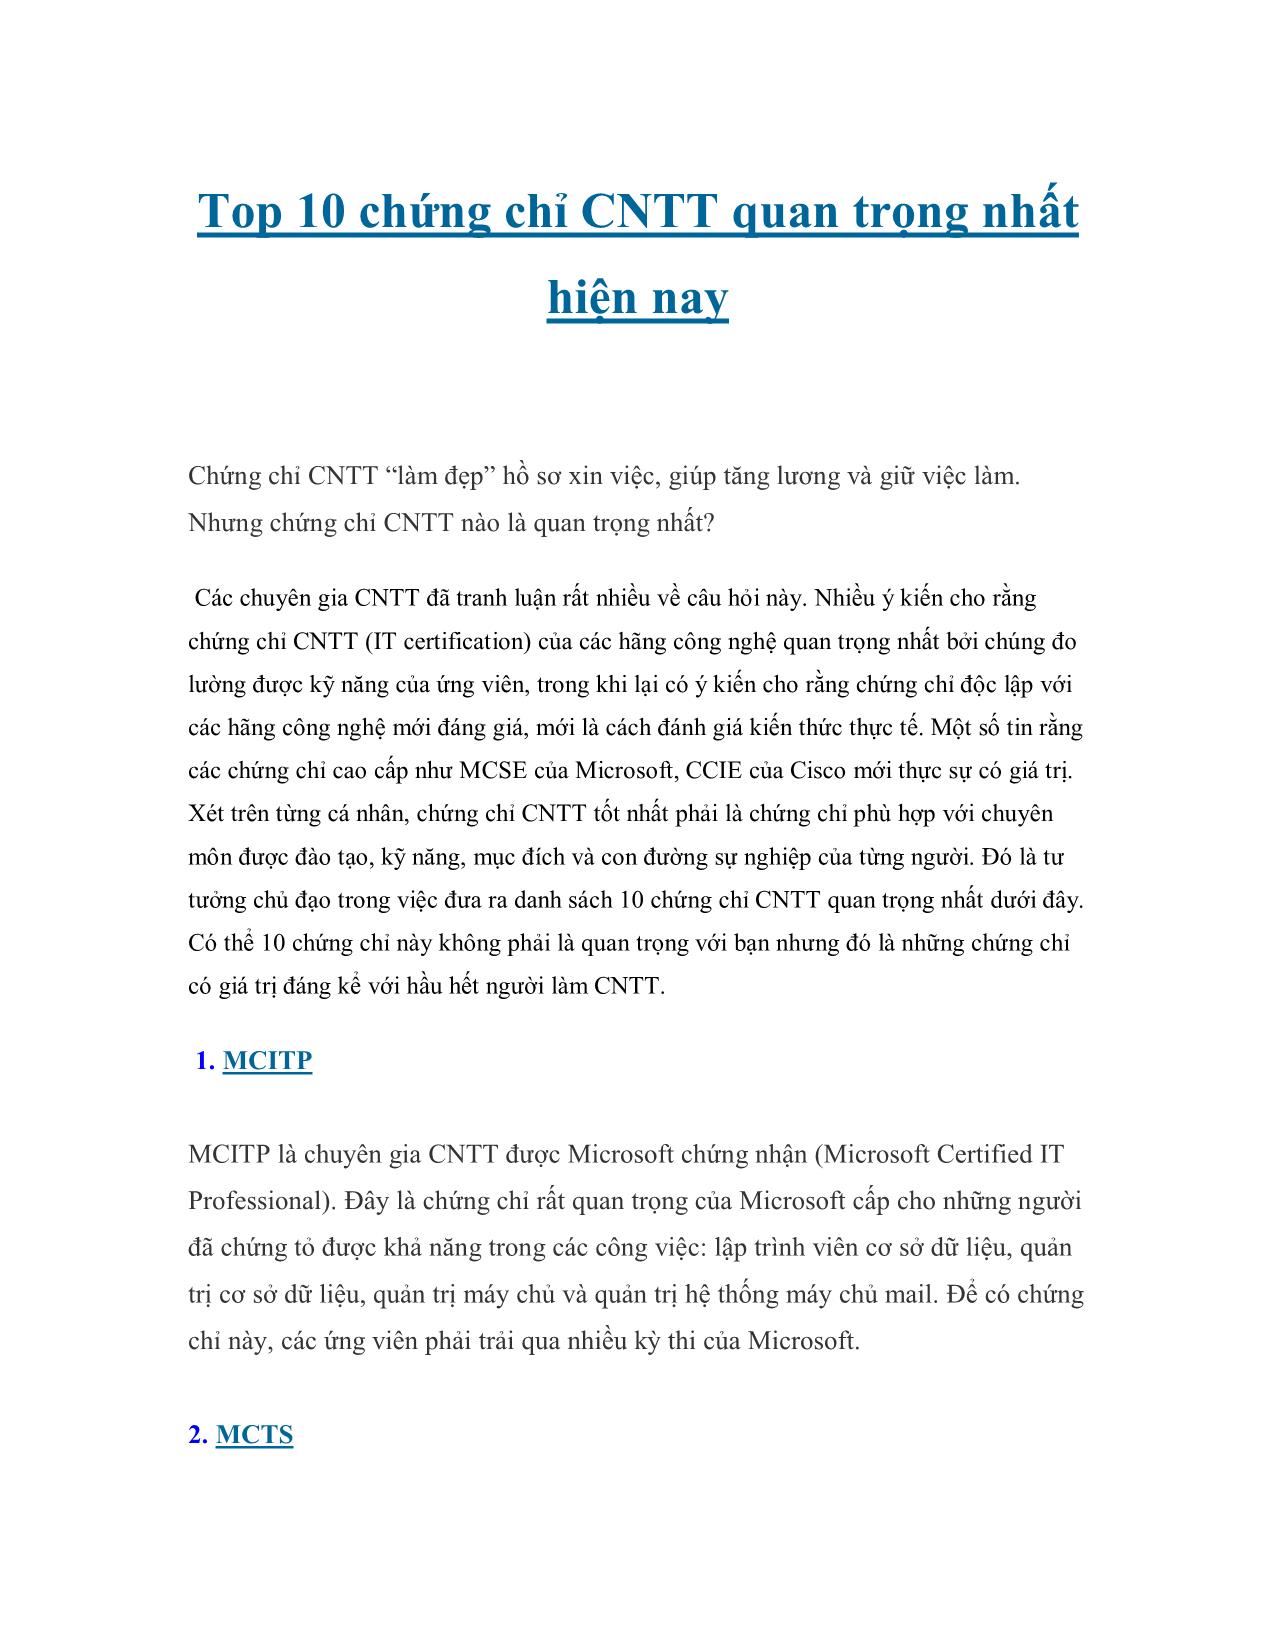 Top 10 chứng chỉ CNTT quan trọng nhất hiện nay trang 1